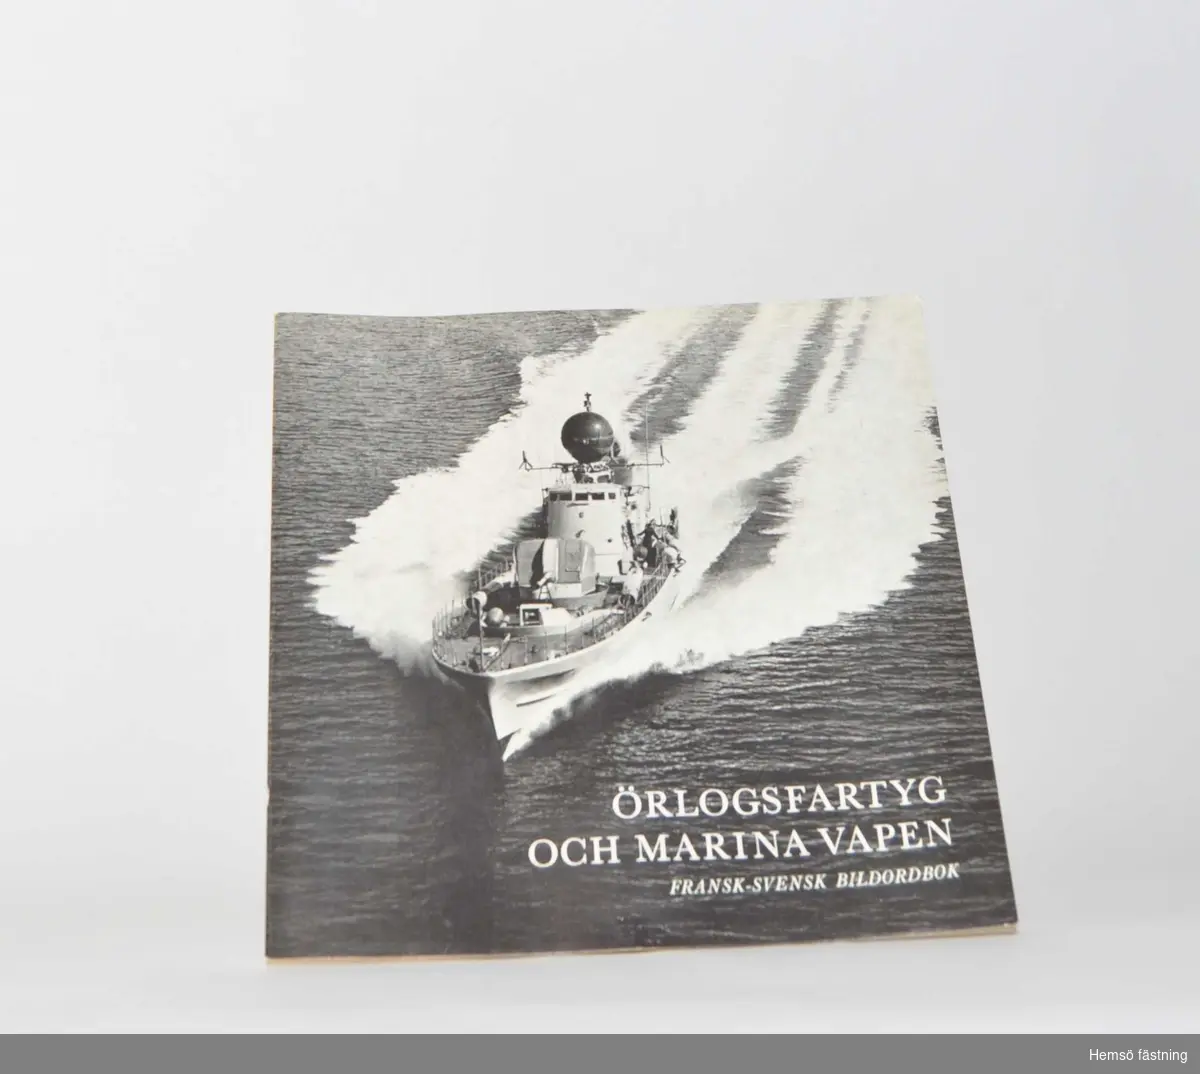 Örlogsfartyg och marina vapen, Fransk-Svensk Bildordbok